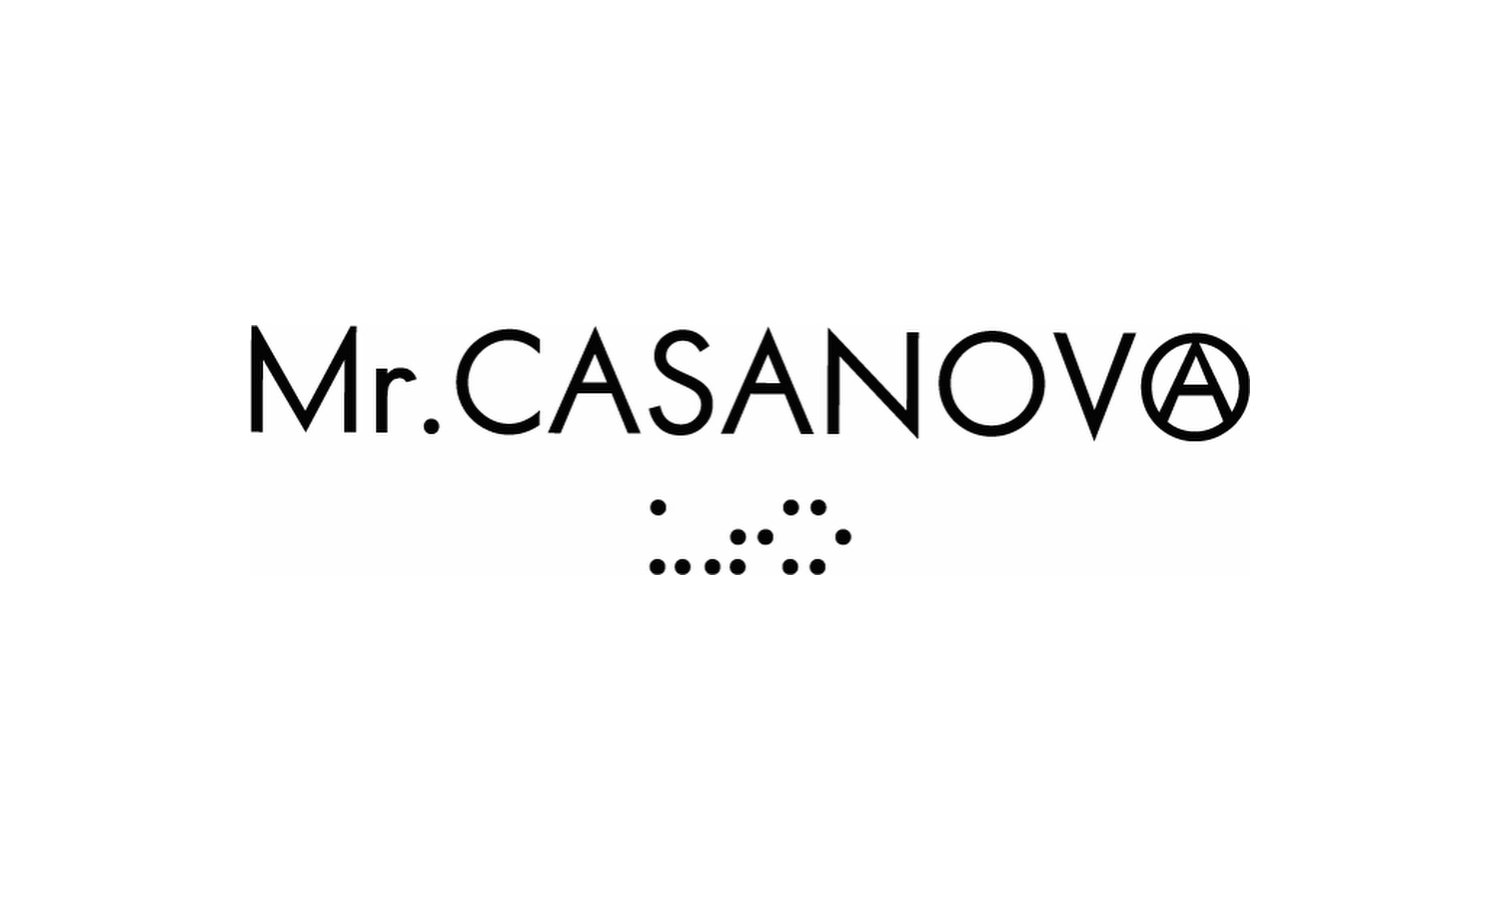 “Mr.CASANOVA